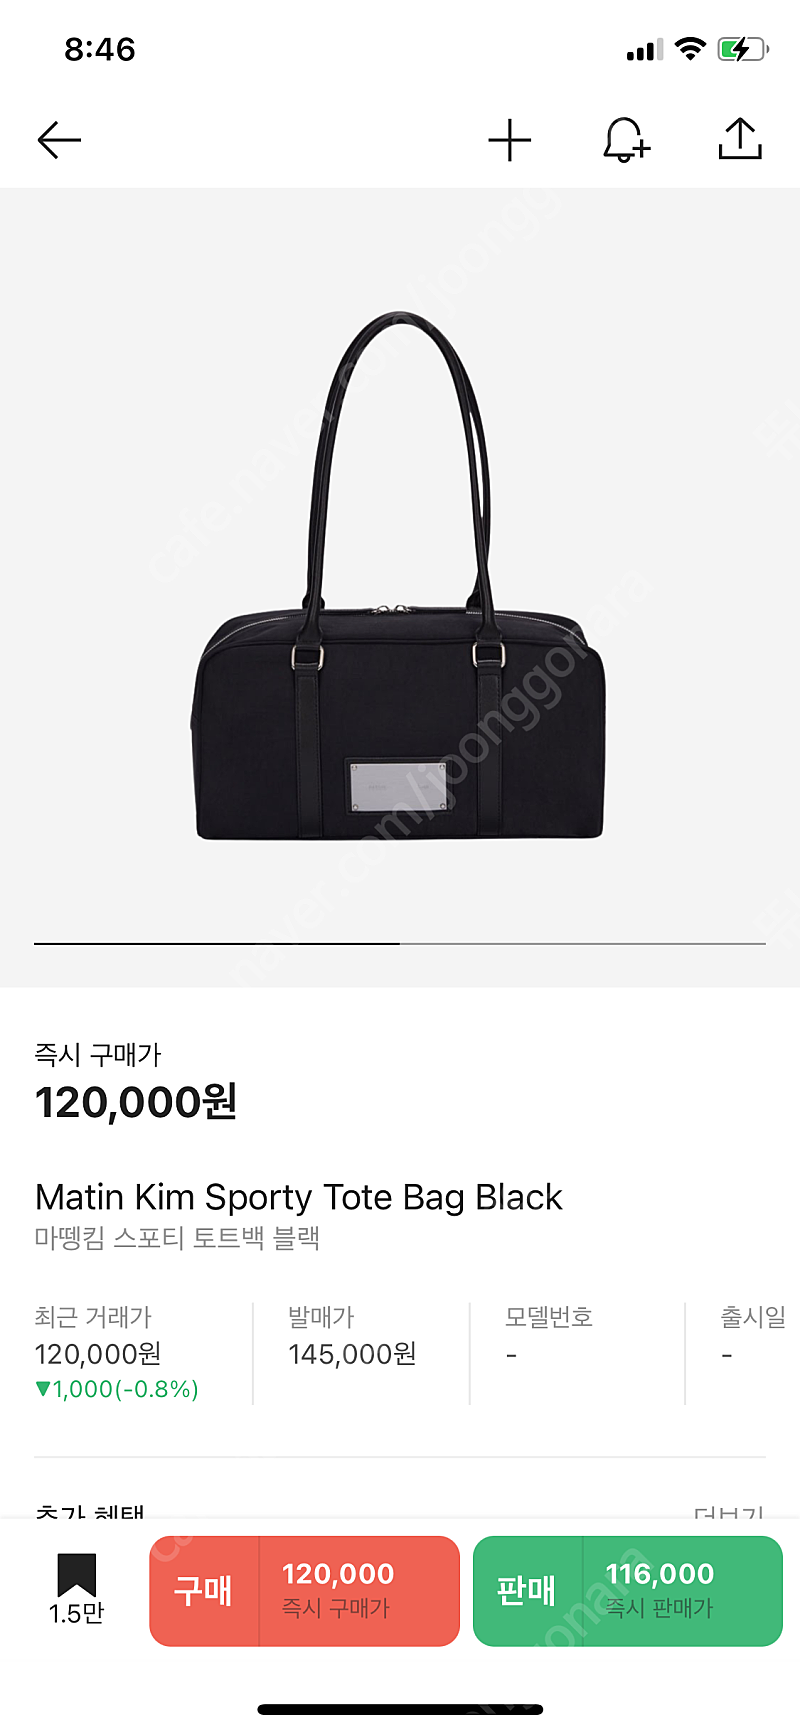 마뗑킴 가방 새상품 Matin Kim Sporty Tote Bag Black